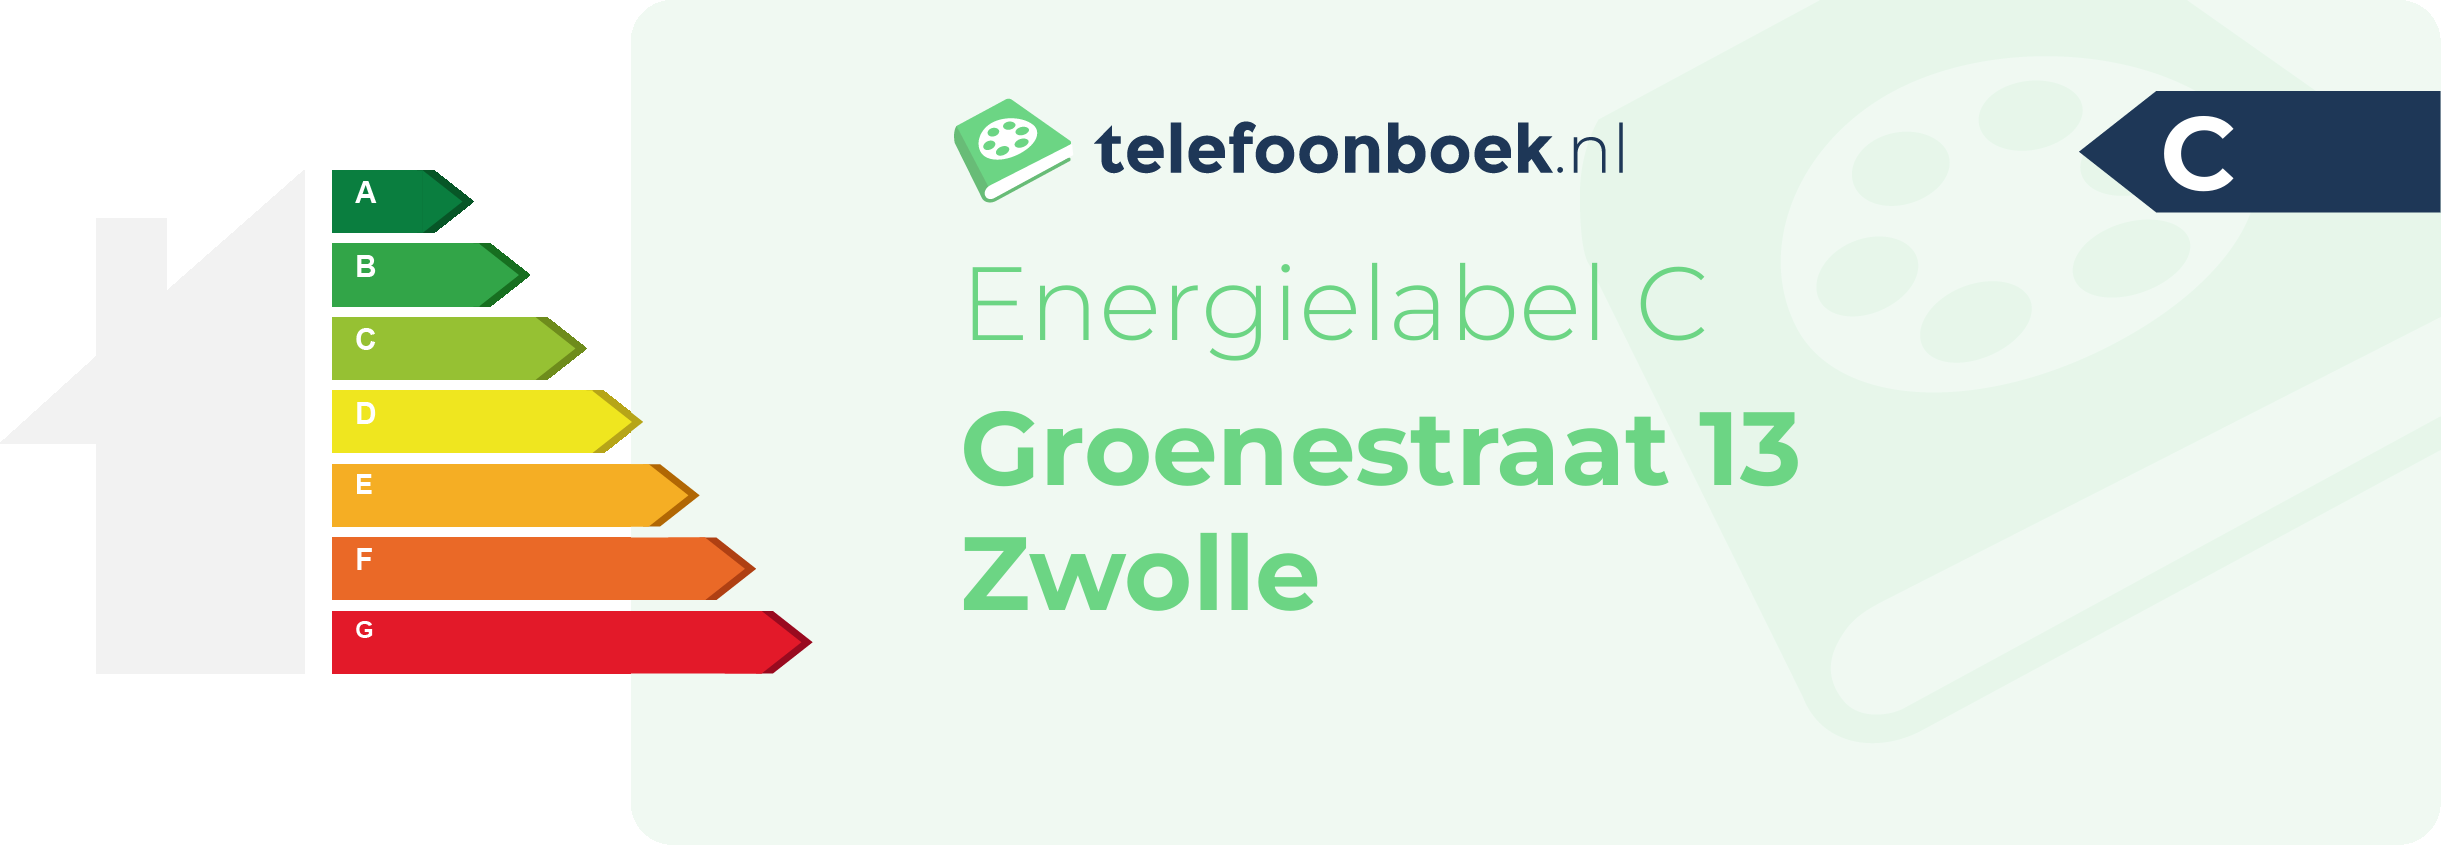 Energielabel Groenestraat 13 Zwolle